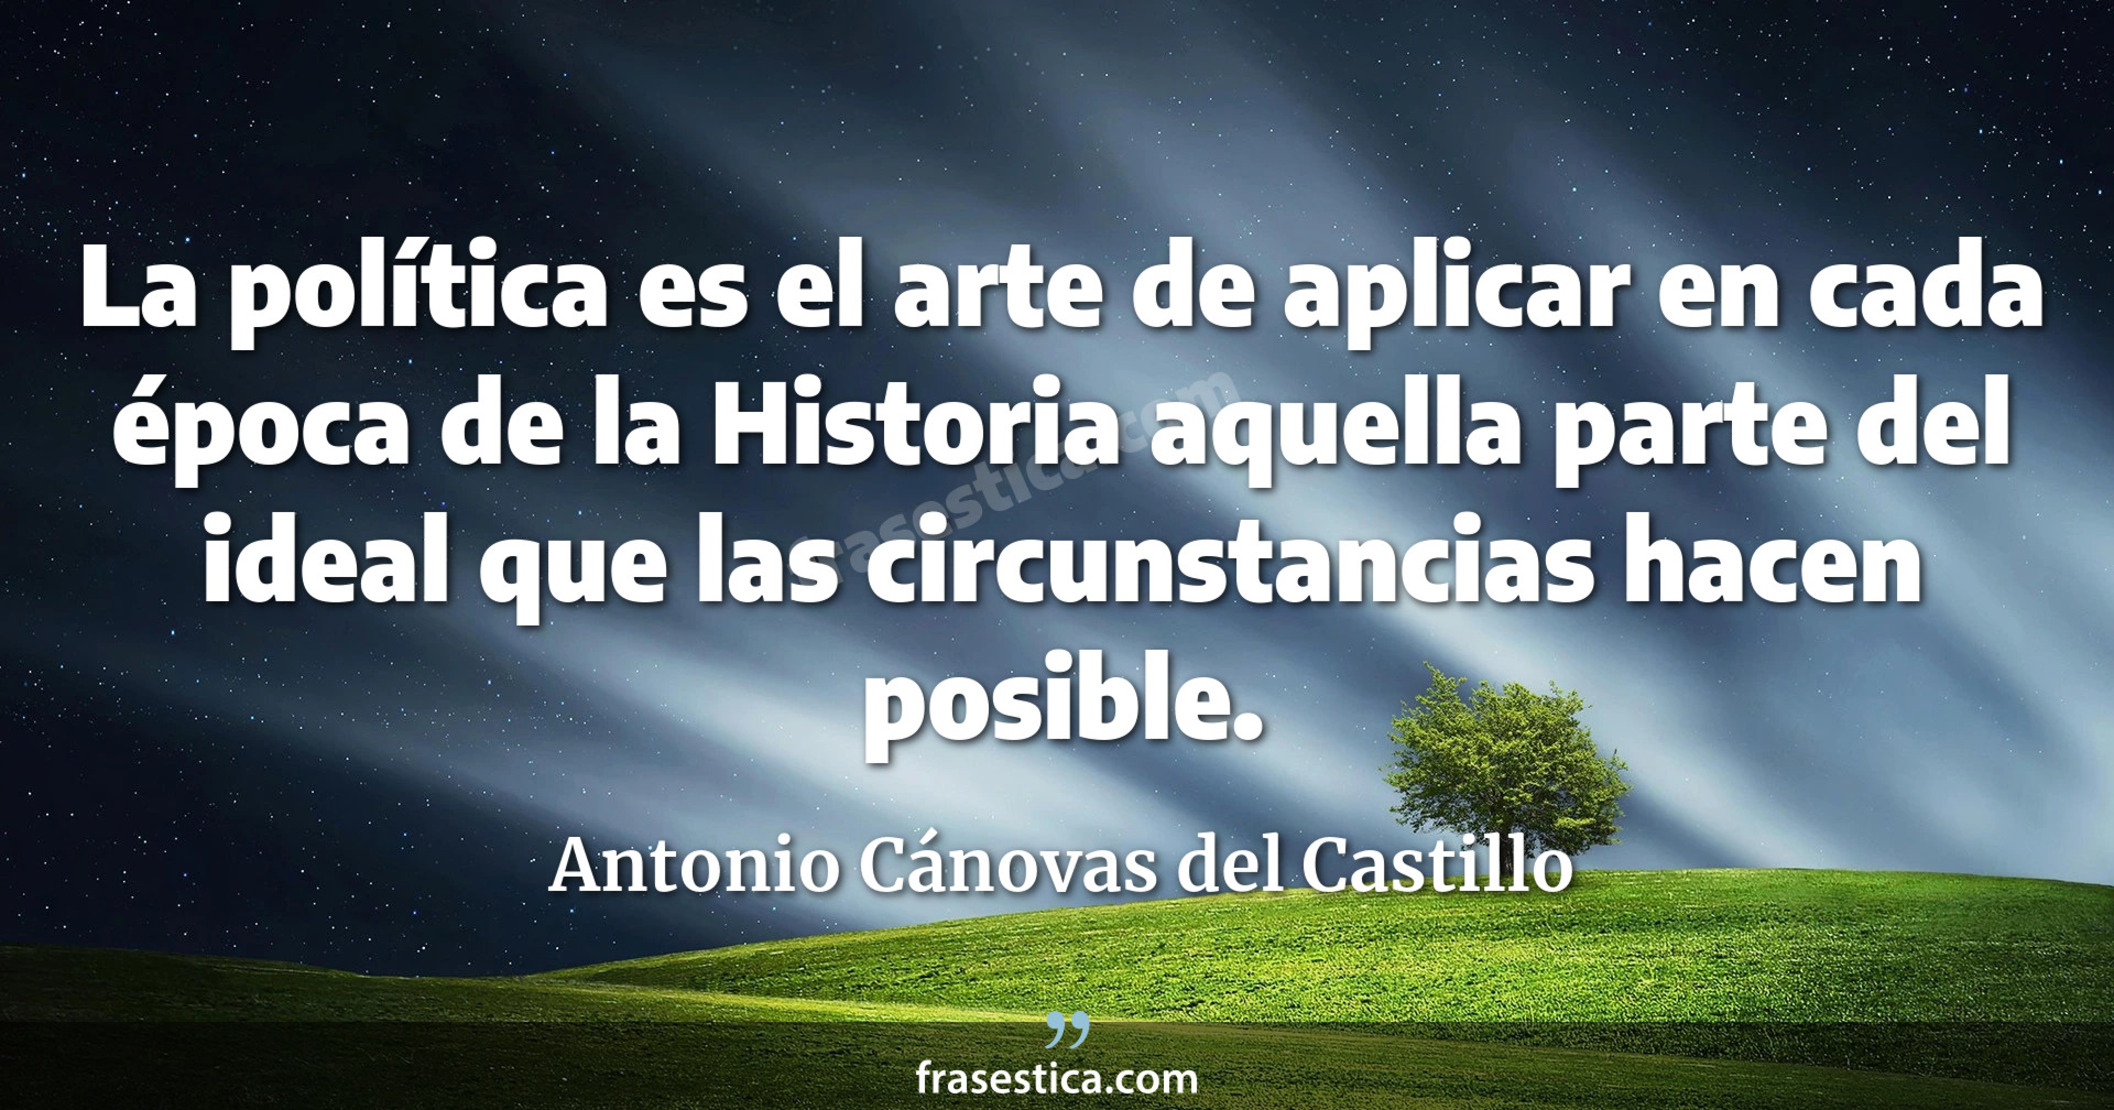 La política es el arte de aplicar en cada época de la Historia aquella parte del ideal que las circunstancias hacen posible. - Antonio Cánovas del Castillo